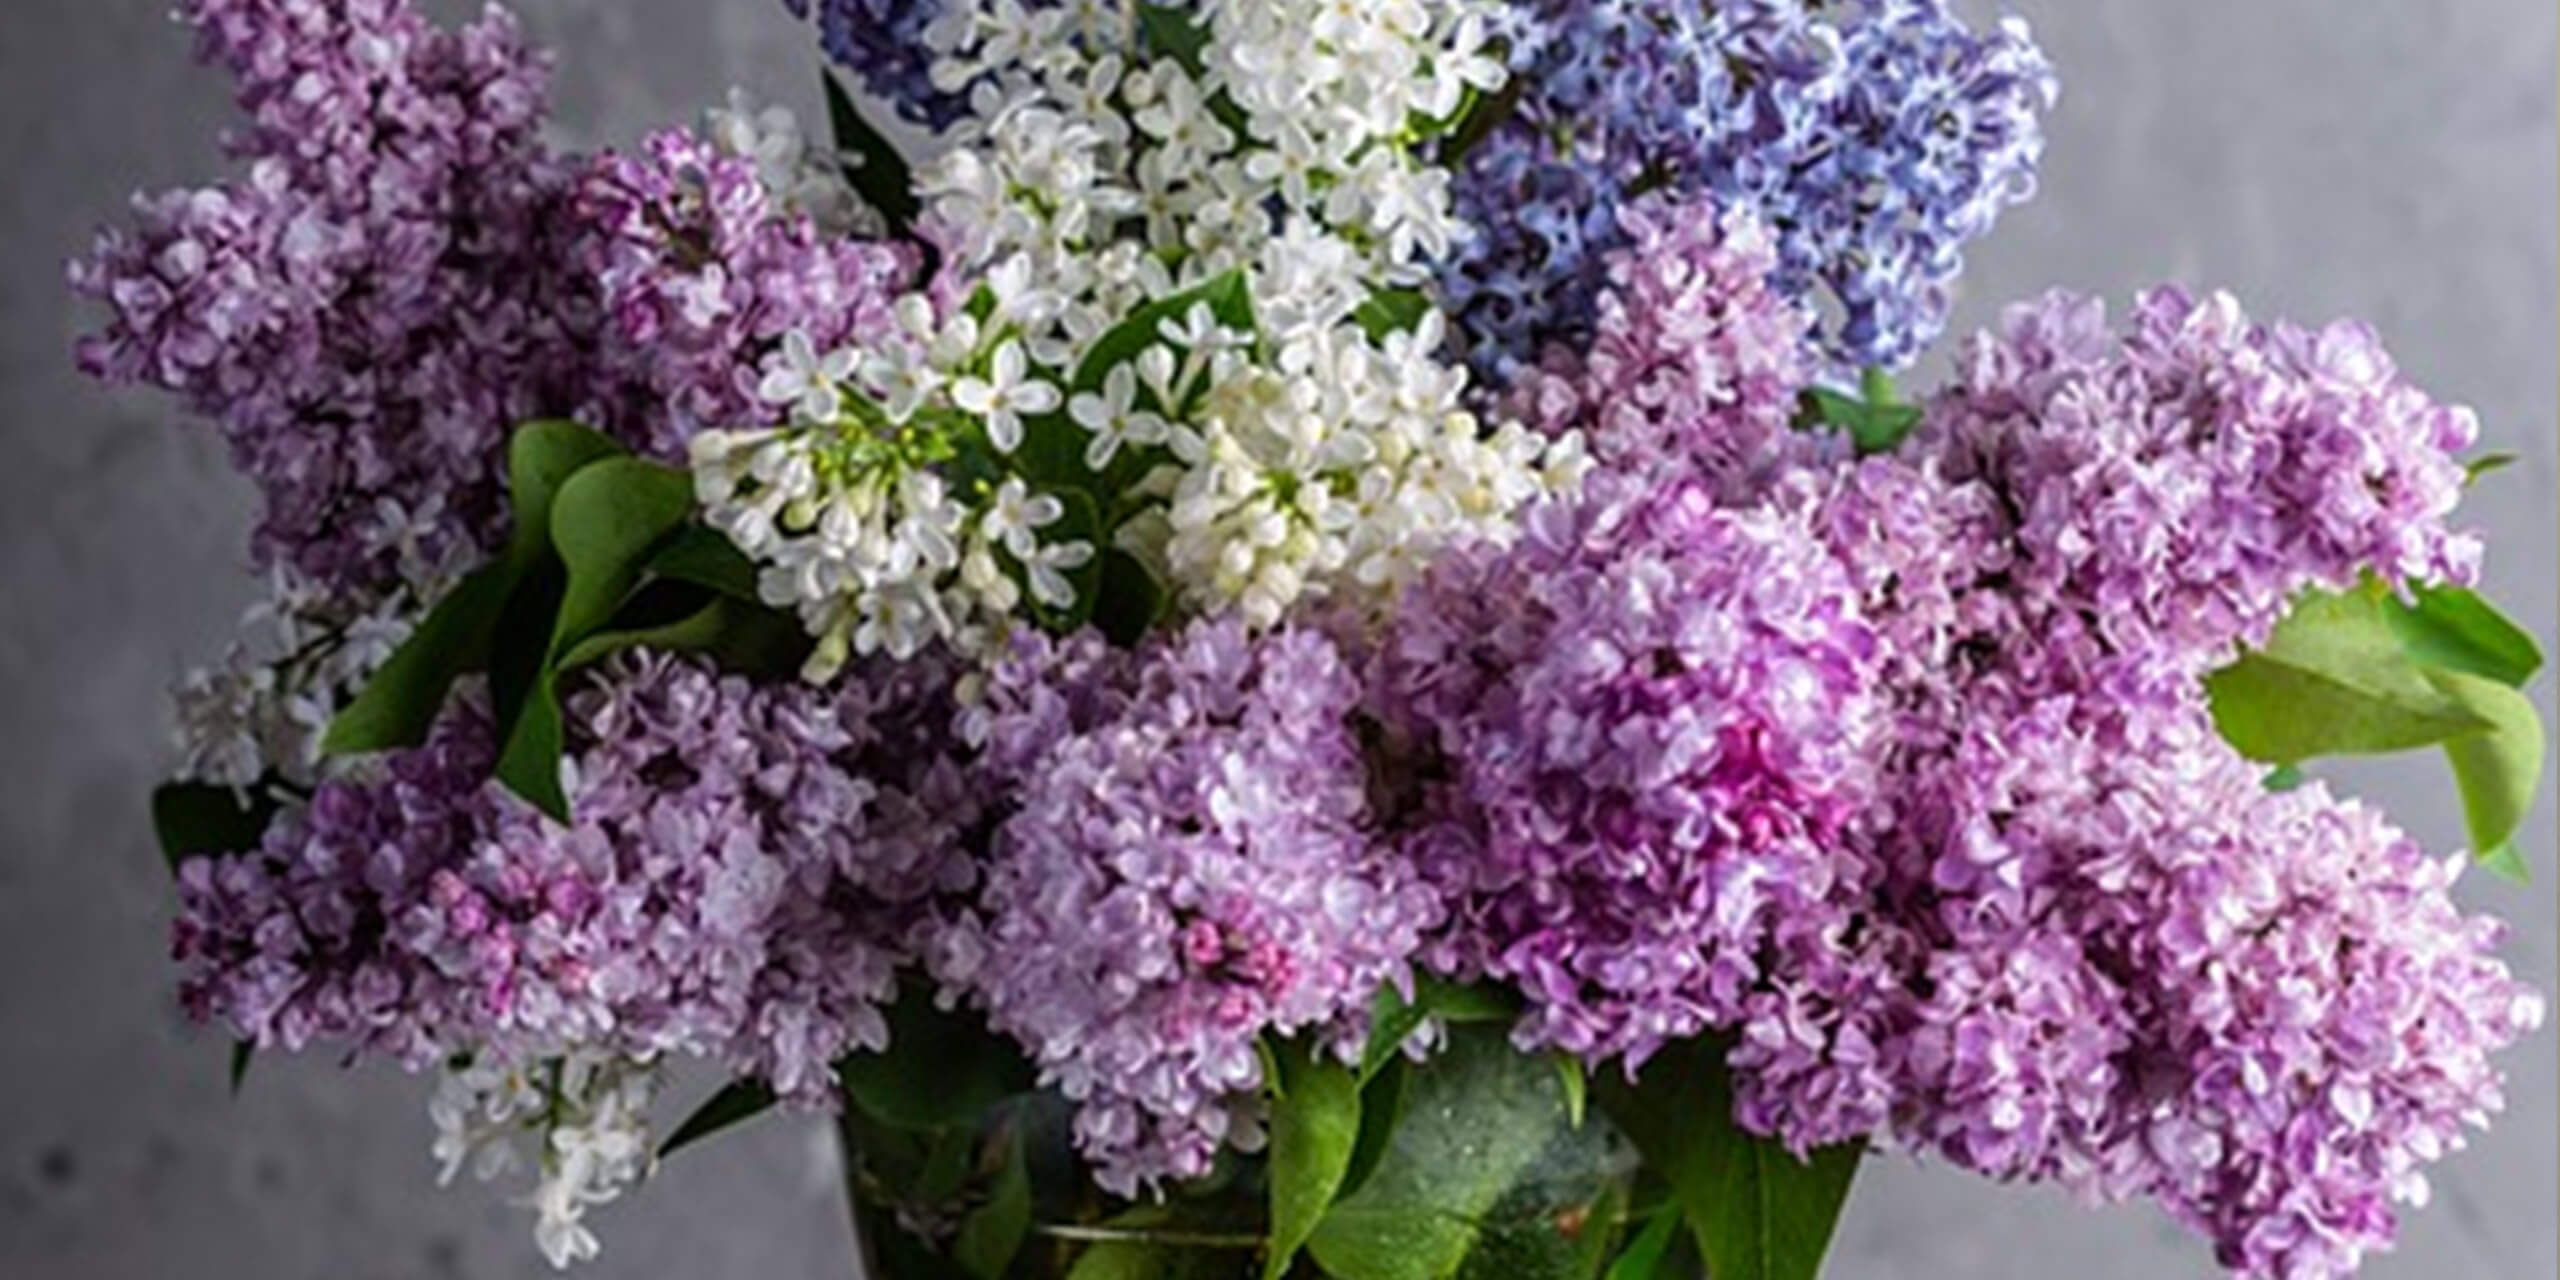 Enviar flores a domicilio: una agradable sorpresa siempre